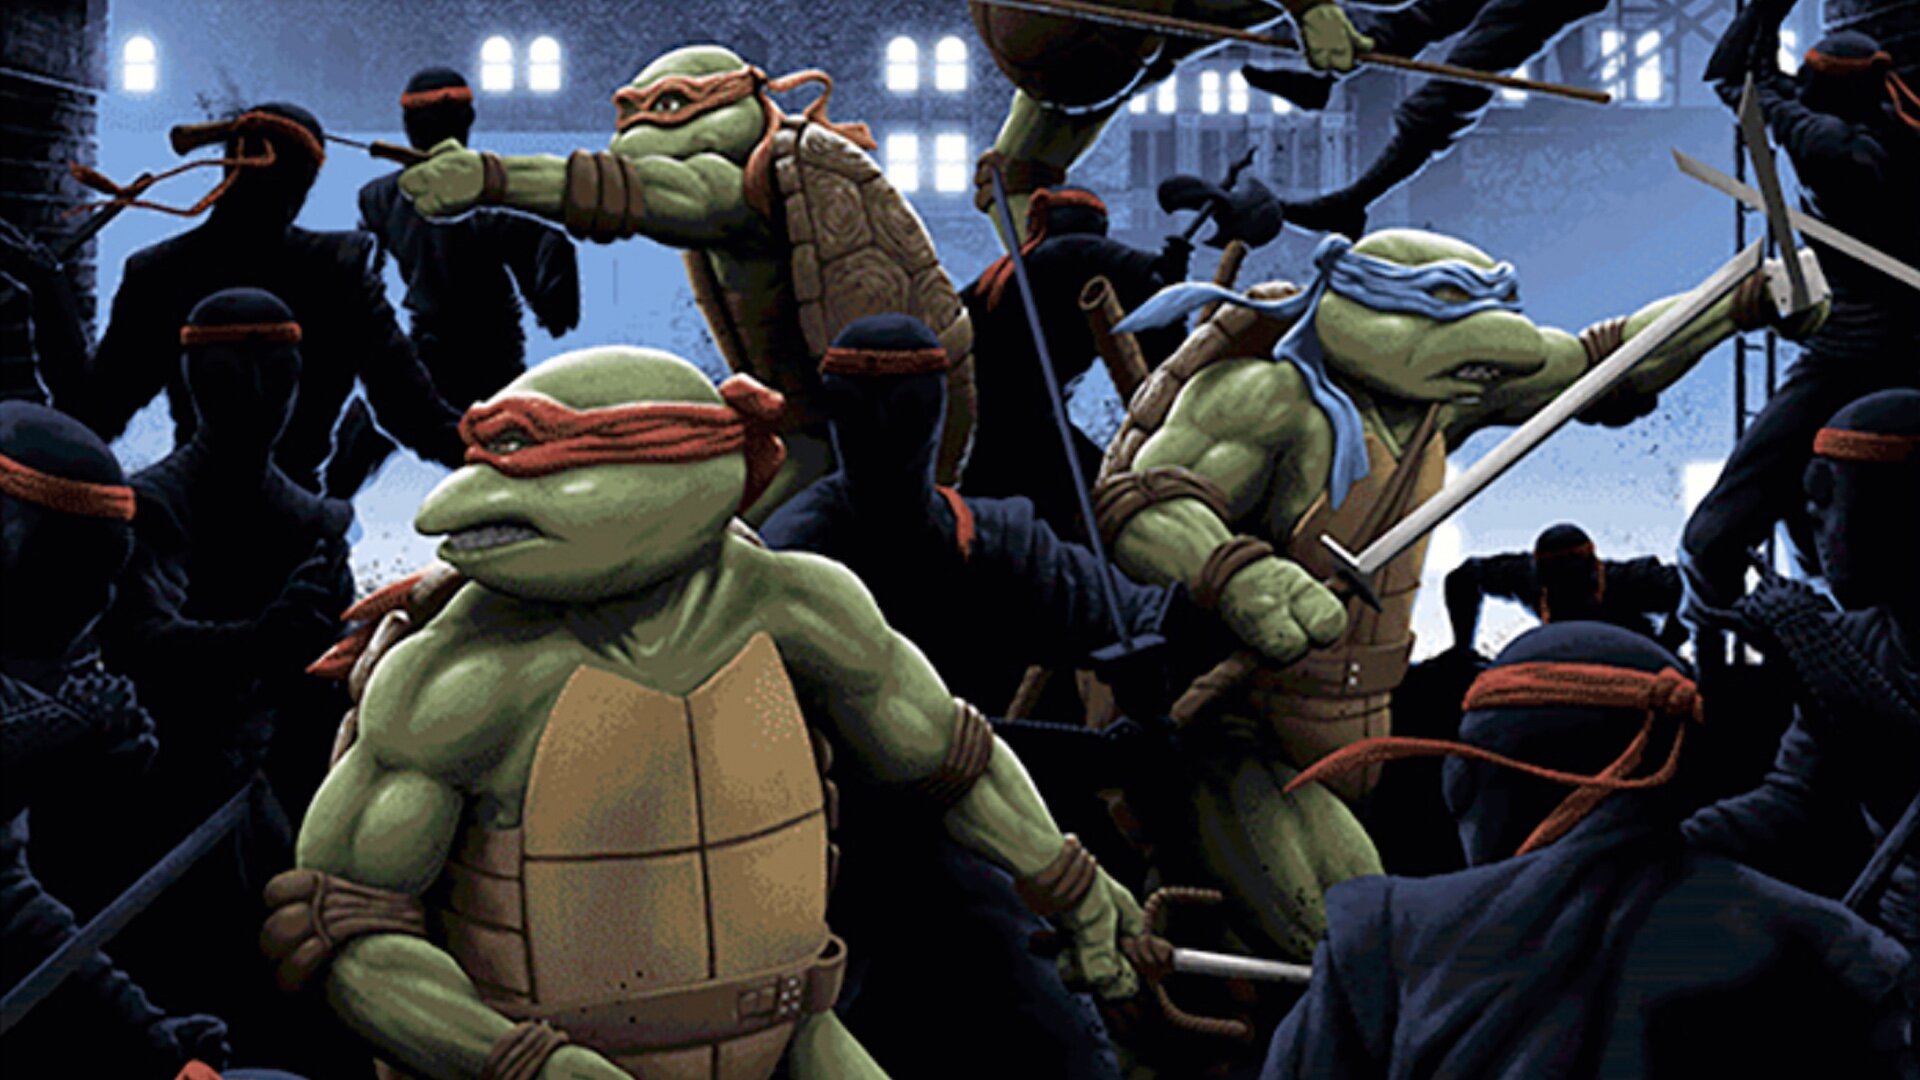 Ninja Turtles/Gallery  Teenage mutant ninja turtles movie, Tmnt, Teenage  mutant ninja turtles art